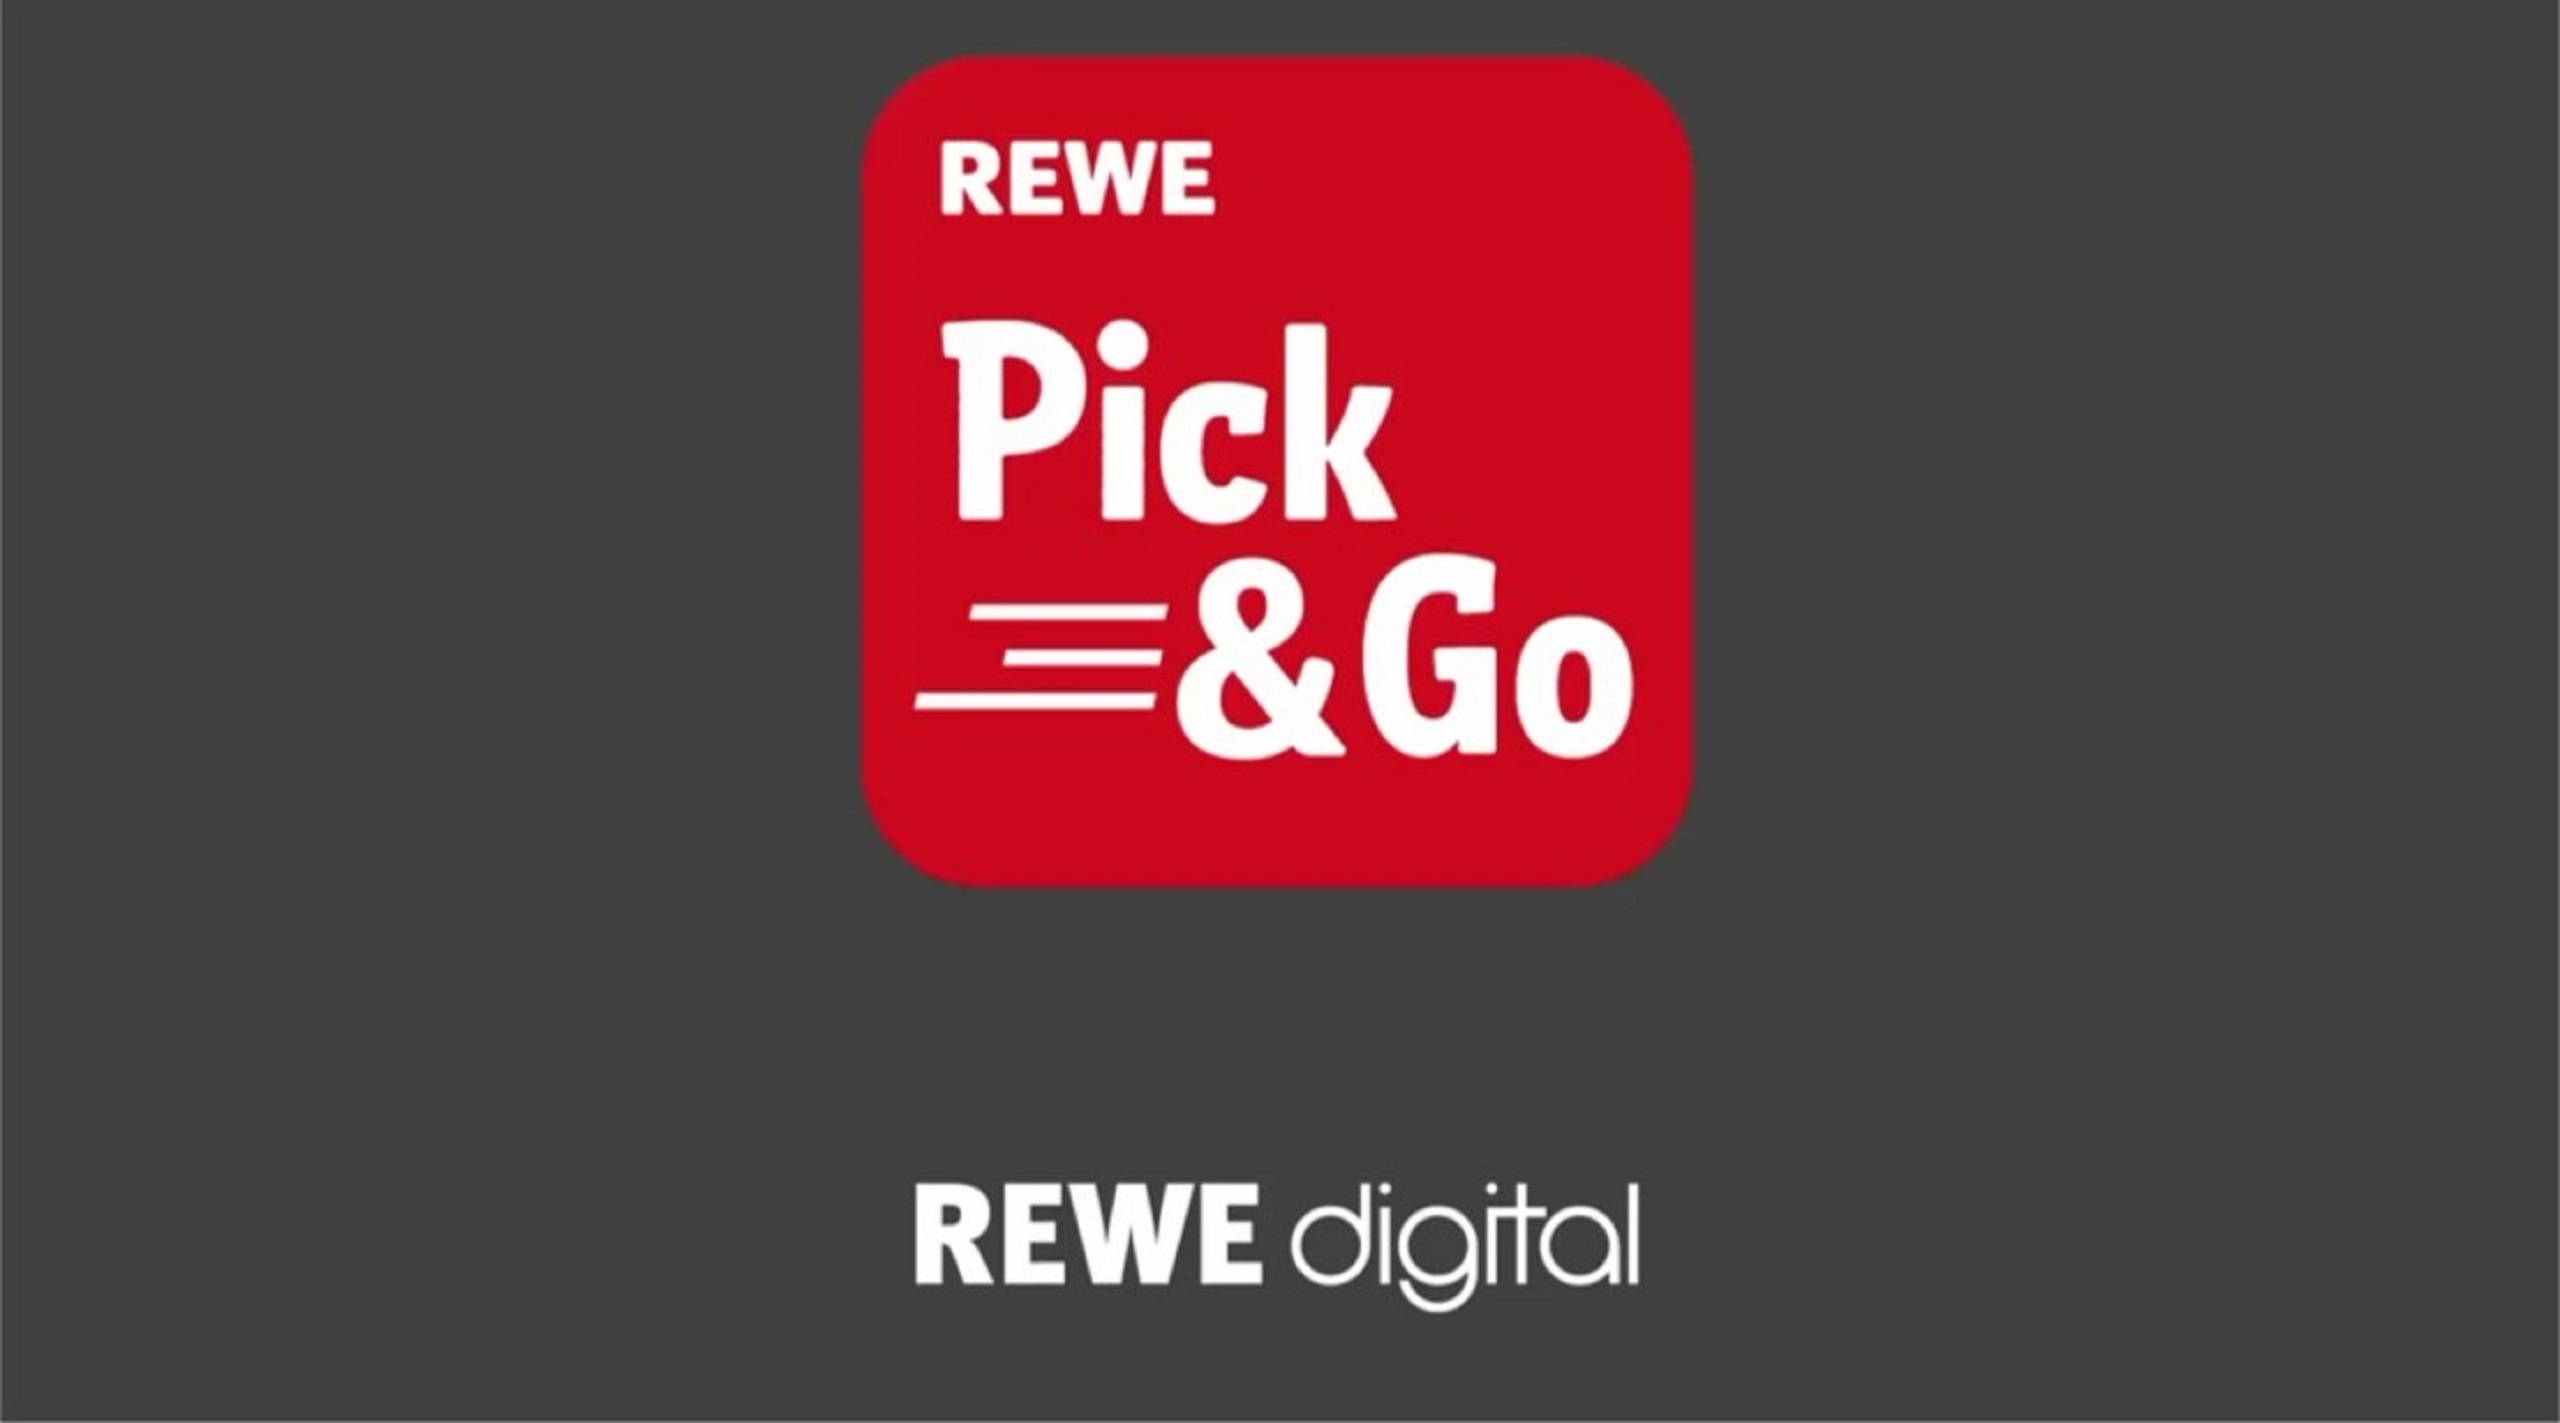 Das Bild zeigt das Logo der Pick&Go App in Verbindung mit dem REWE digital Logo als Startbild für ein Video.